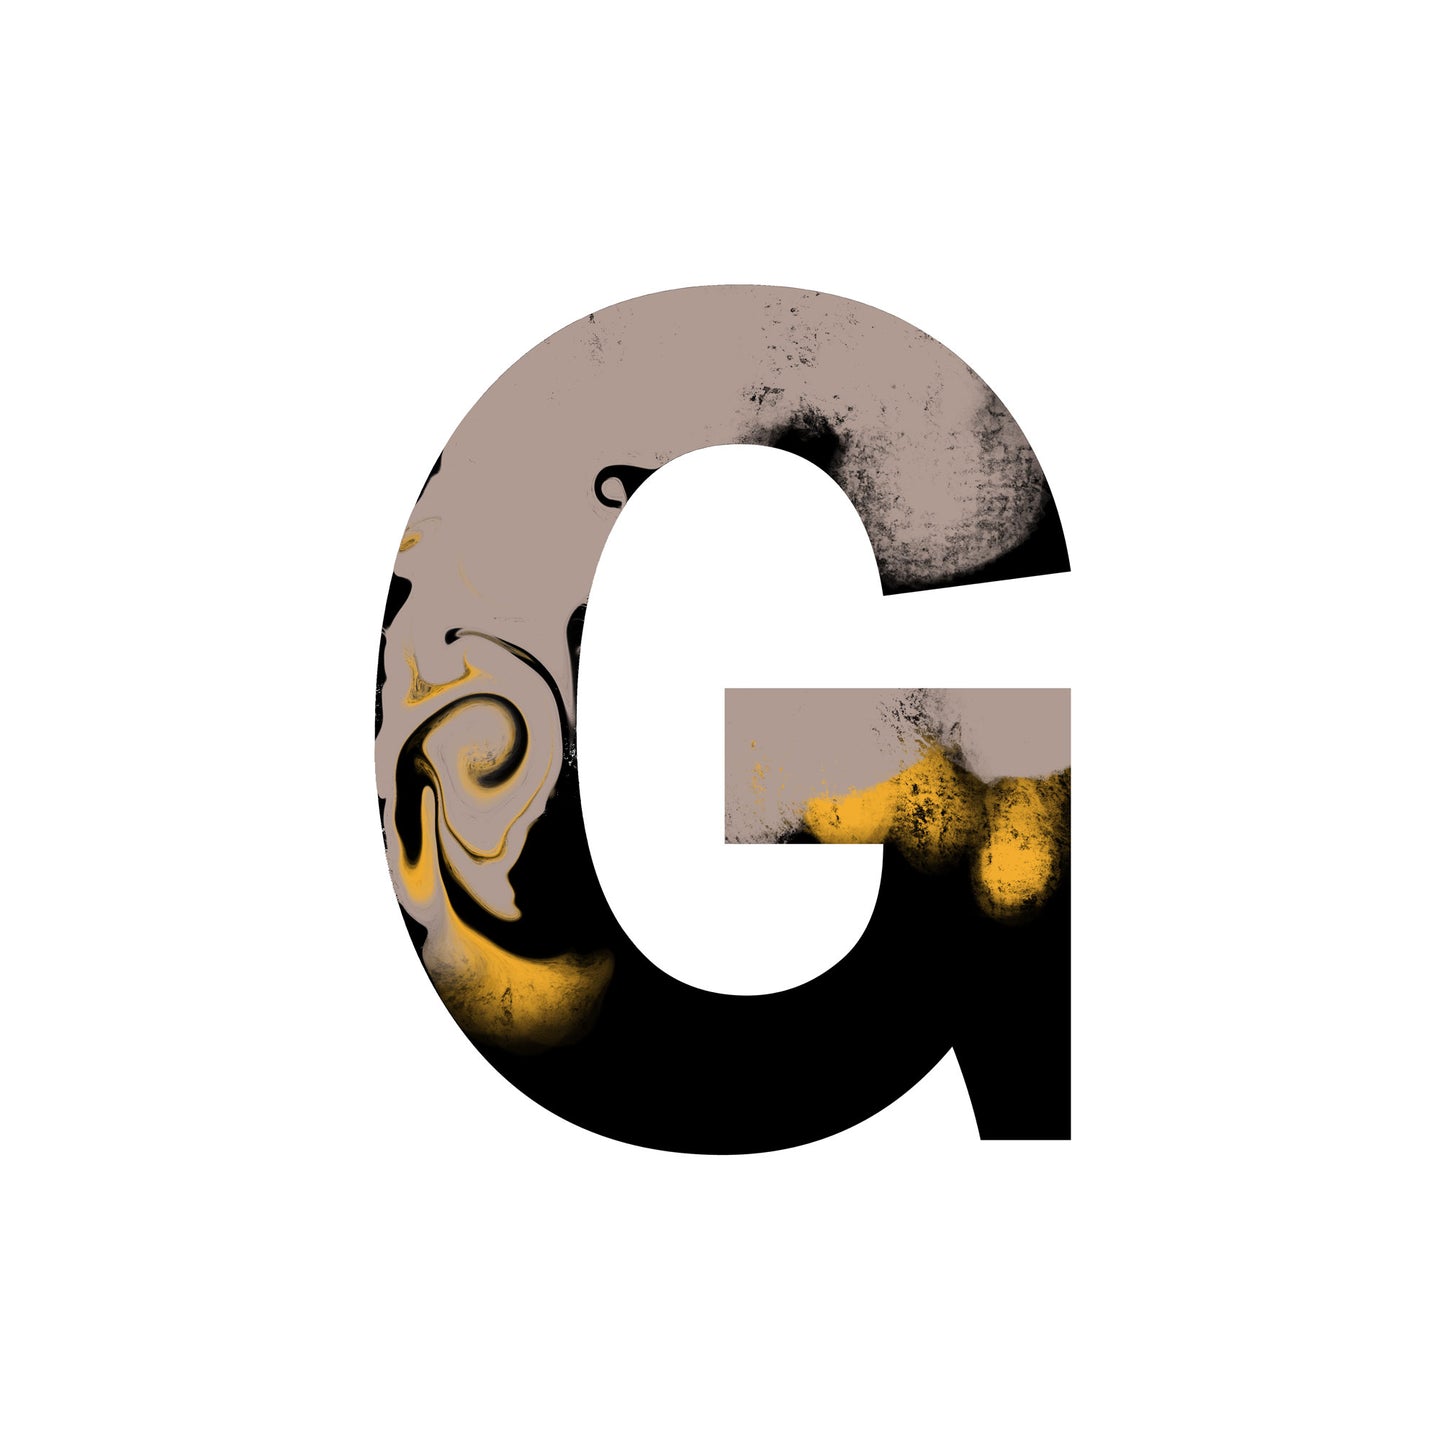 'WILD G' From the Wild Alphabet.